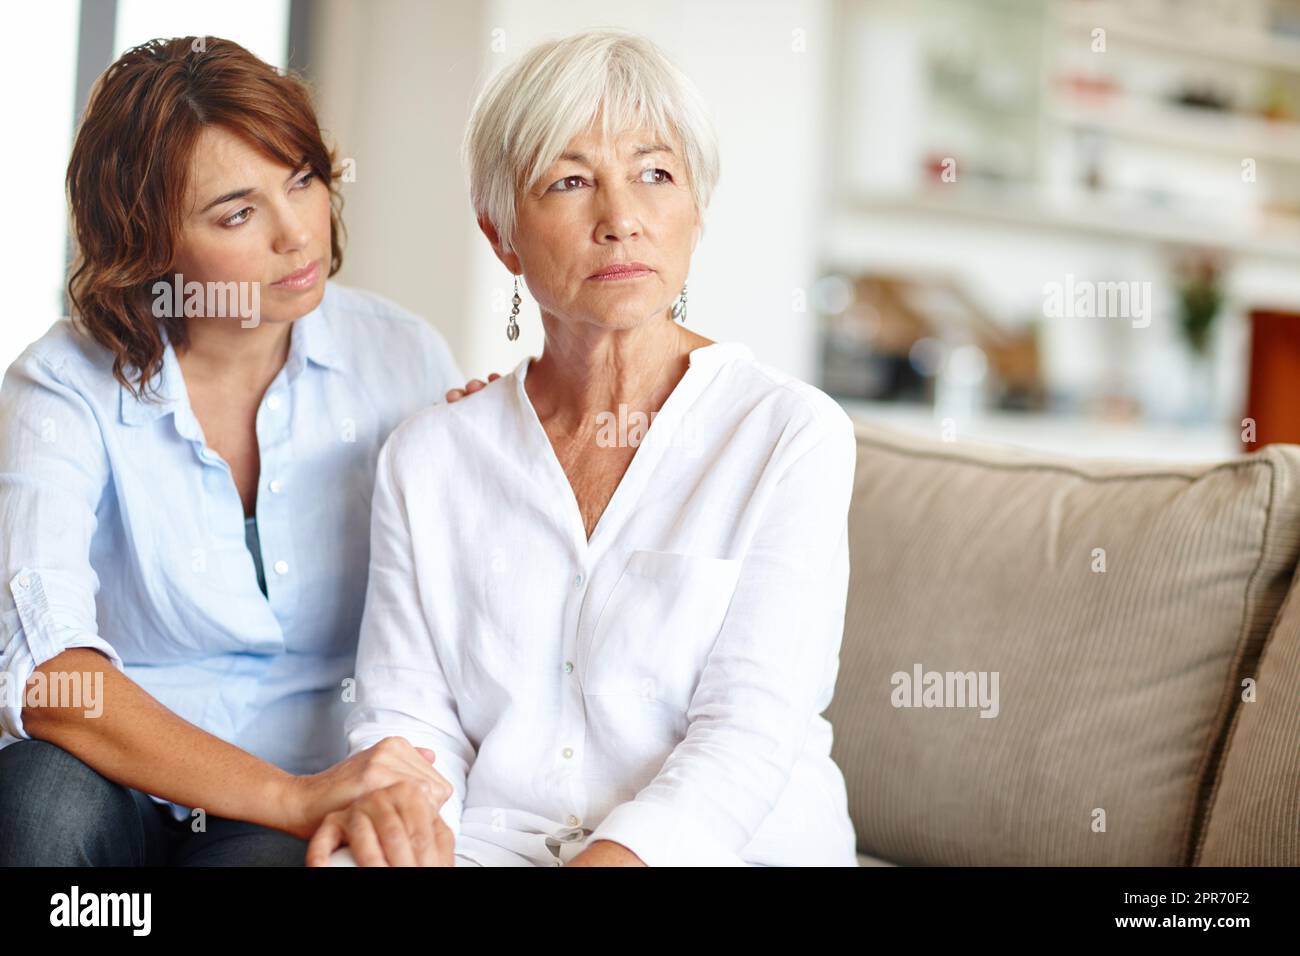 Was ist in deinem Kopf, Mama. Aufnahme einer Frau, die ihre ältere Mutter durch eine schwierige Zeit unterstützt. Stockfoto